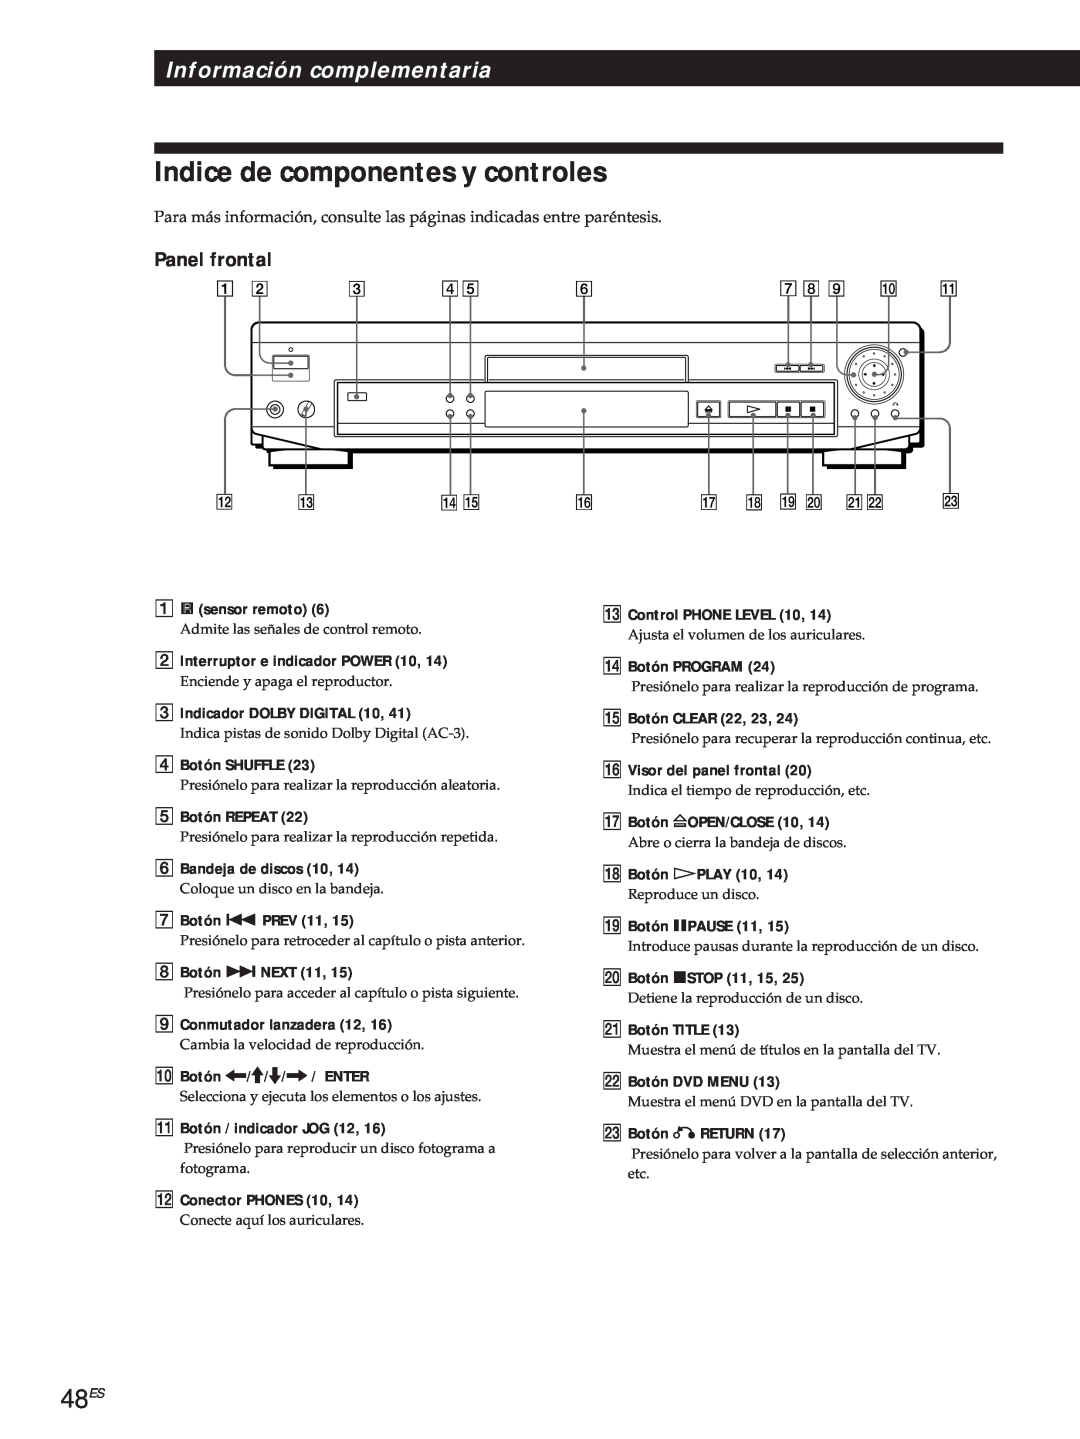 Sony DVP-S500D manual Indice de componentes y controles, 48ES, Panel frontal, Información complementaria, gsensor remoto 